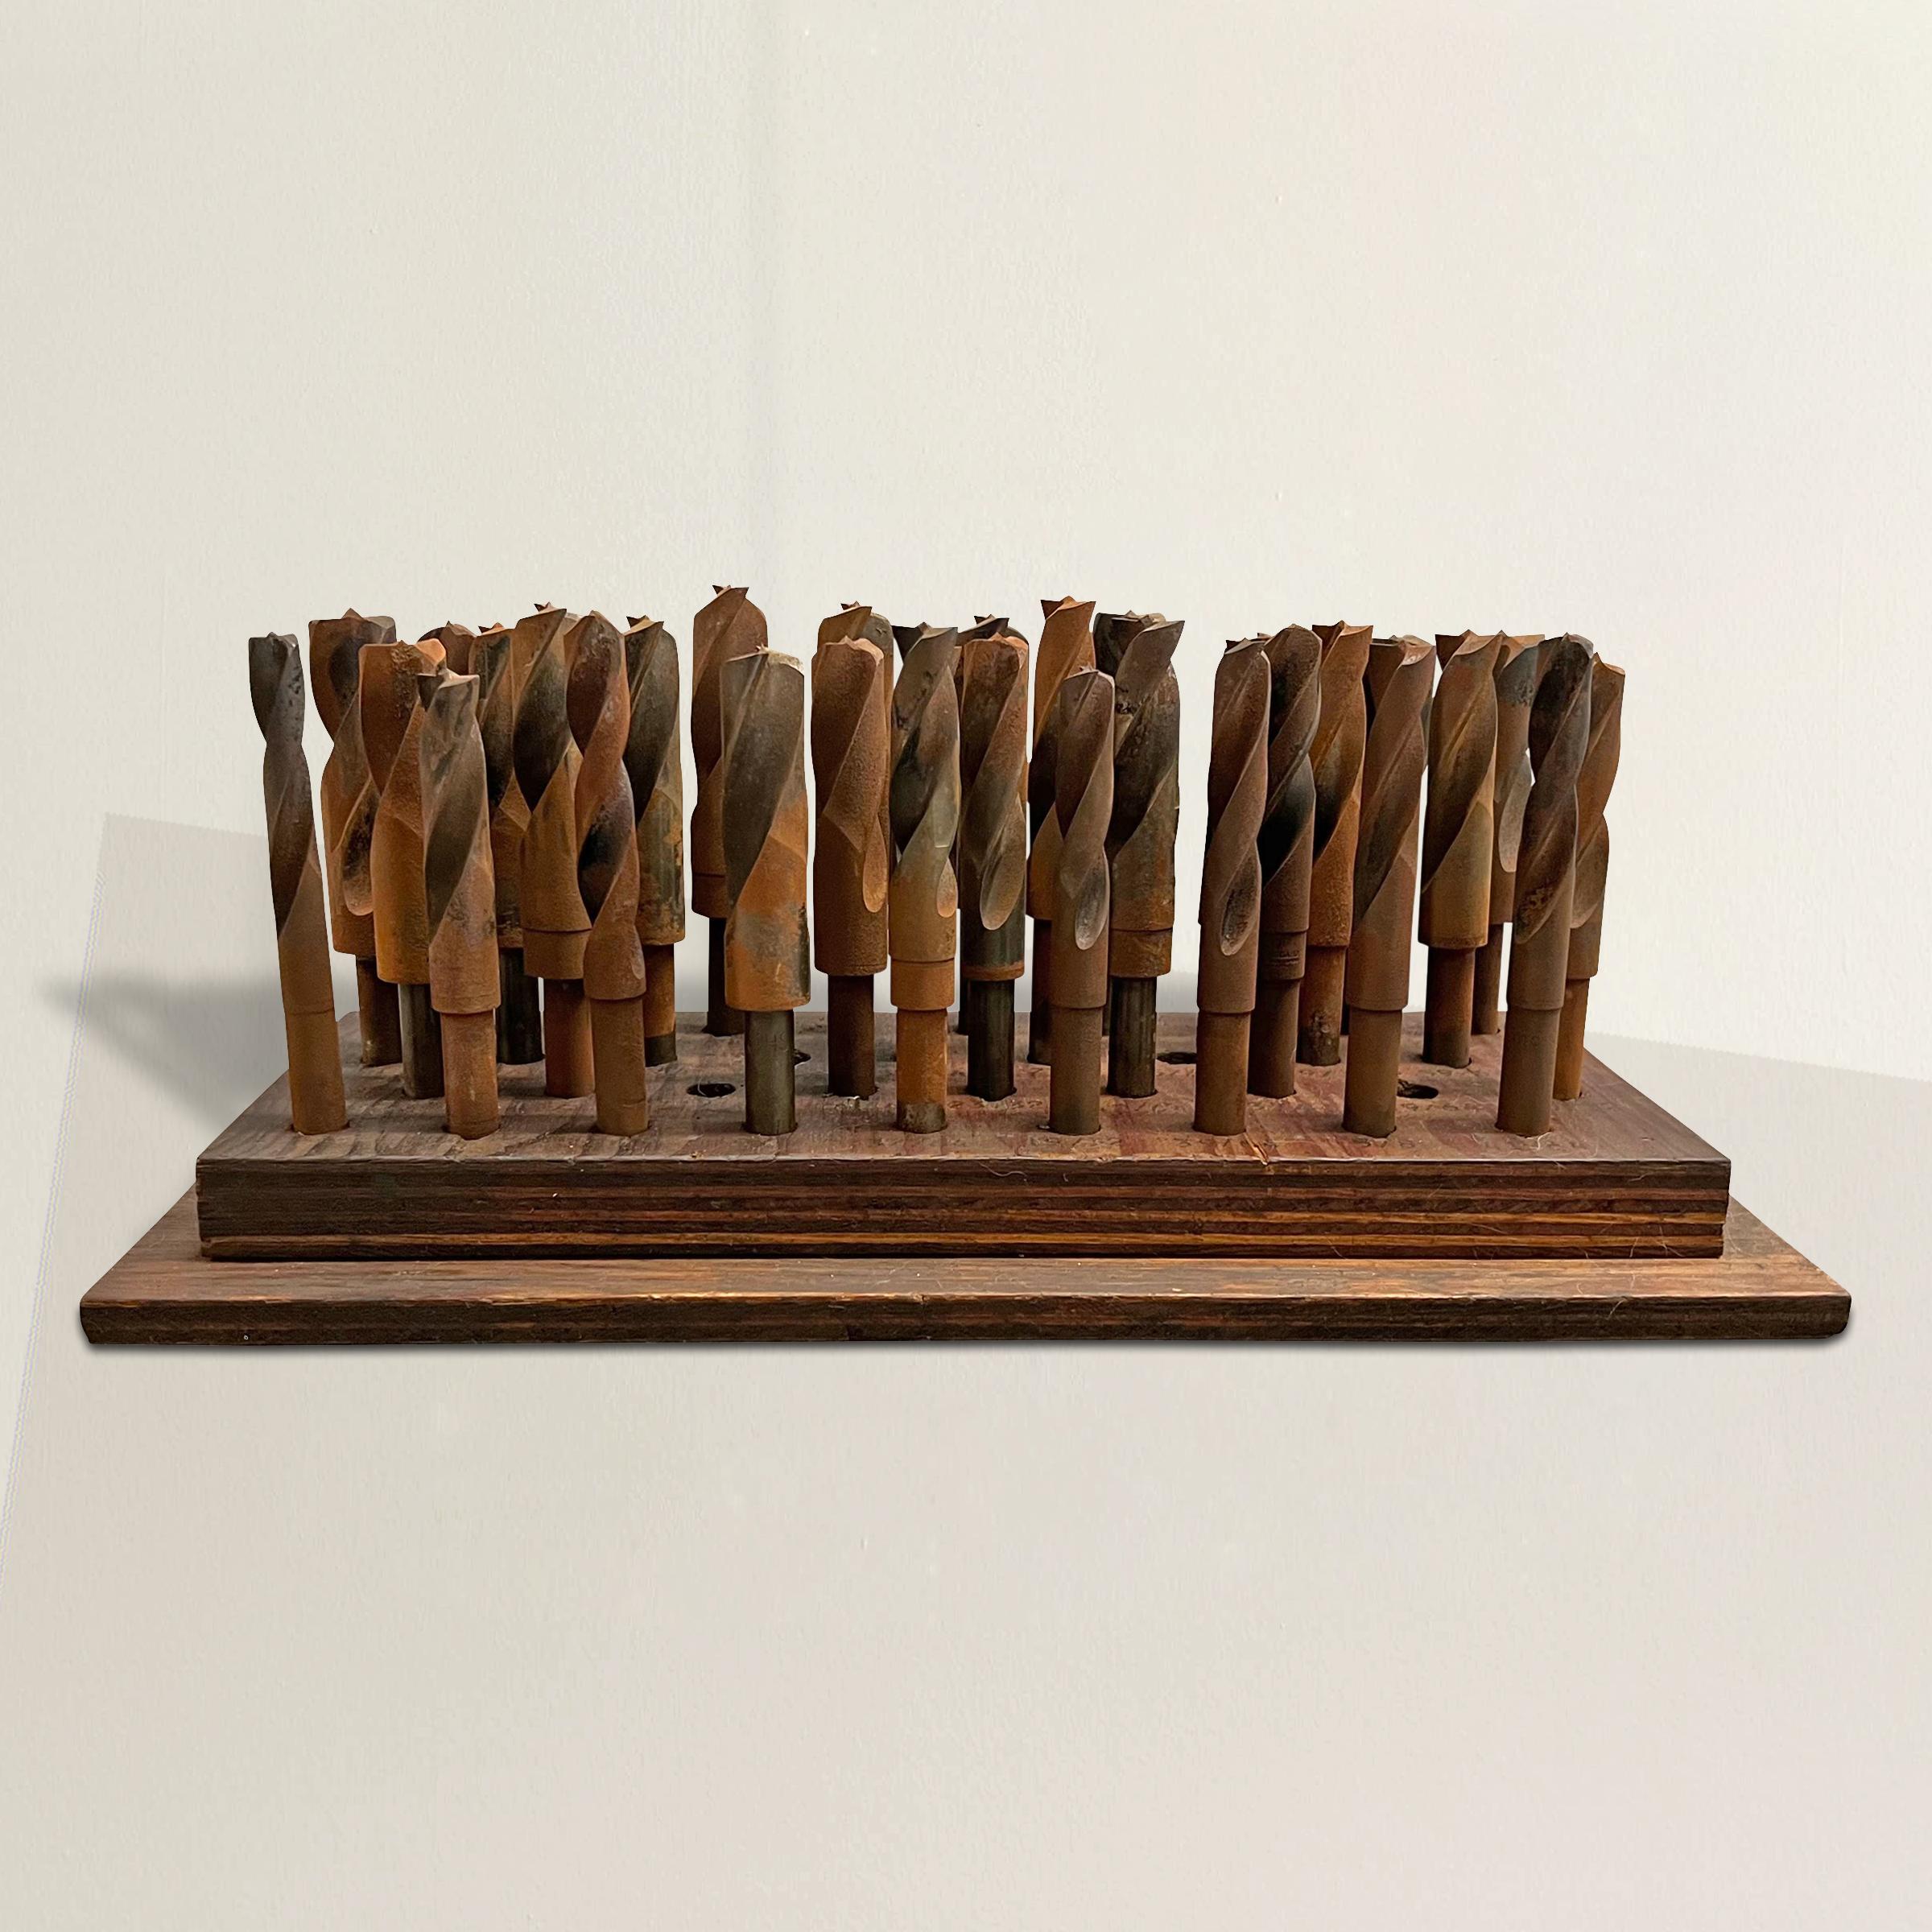 Ein wunderbar skulpturaler amerikanischer Satz von 32 großen Bohrern aus Stahl auf einem Holzsockel aus dem frühen 20. Jahrhundert, der ursprünglich in einer Werkstatt verwendet wurde, aber in die Wohnung gebracht wurde, wird zu einer